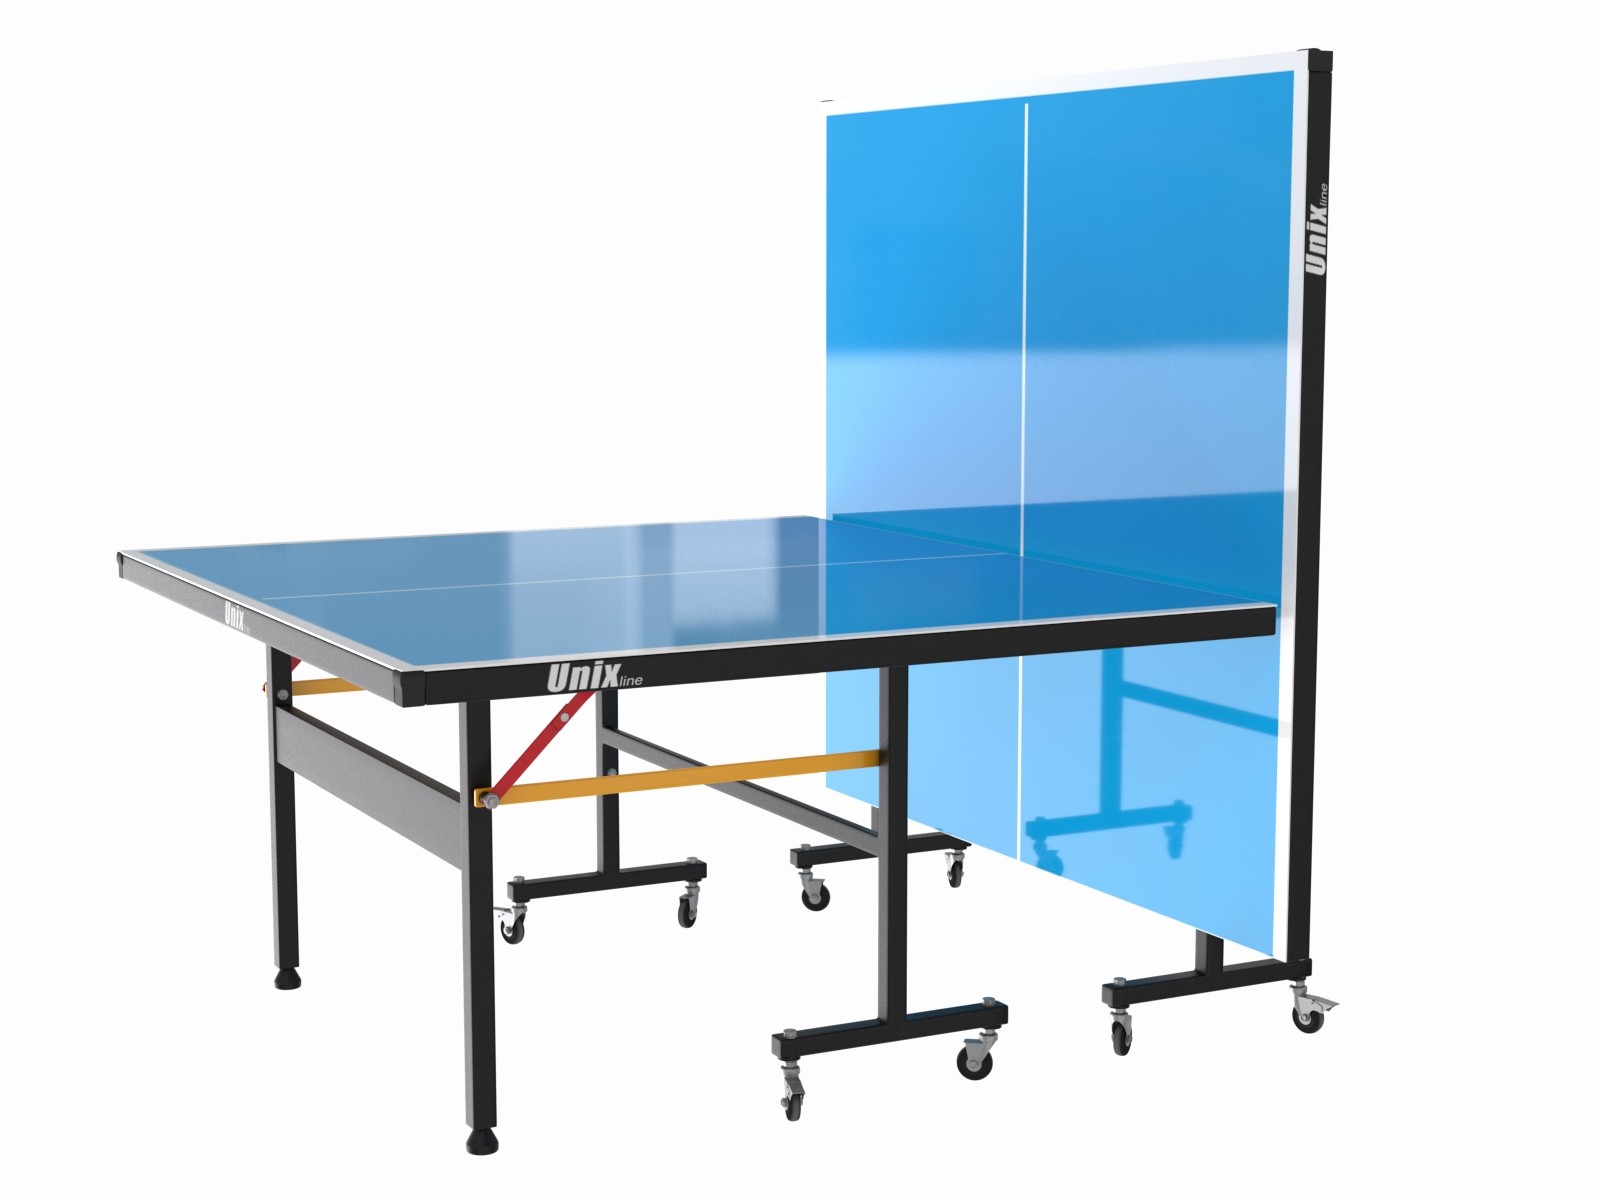 Всепогодный теннисный стол UNIX line outdoor 6mm (blue), изображение 7